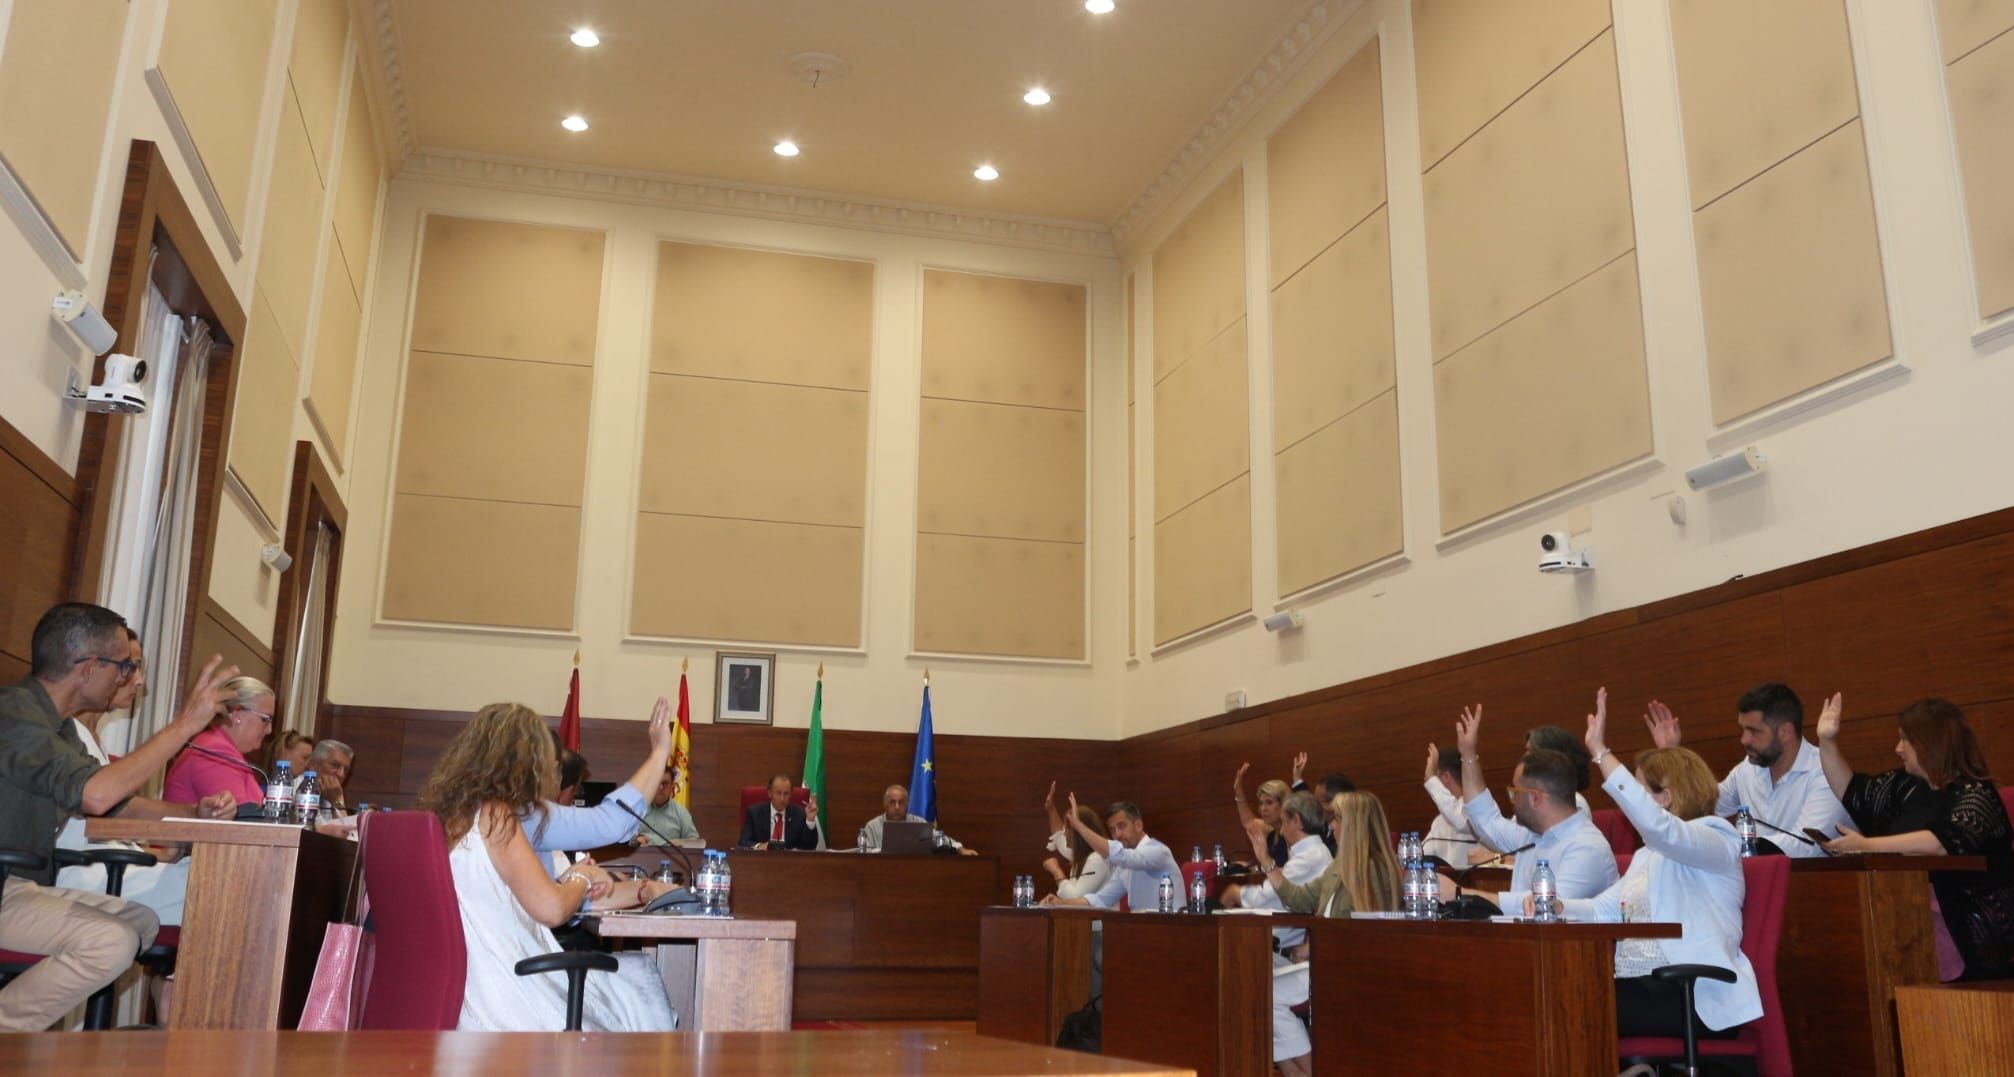 Román volverá a cobrar del Ayuntamiento de Chiclana: aprobados los sueldos de la Corporación.